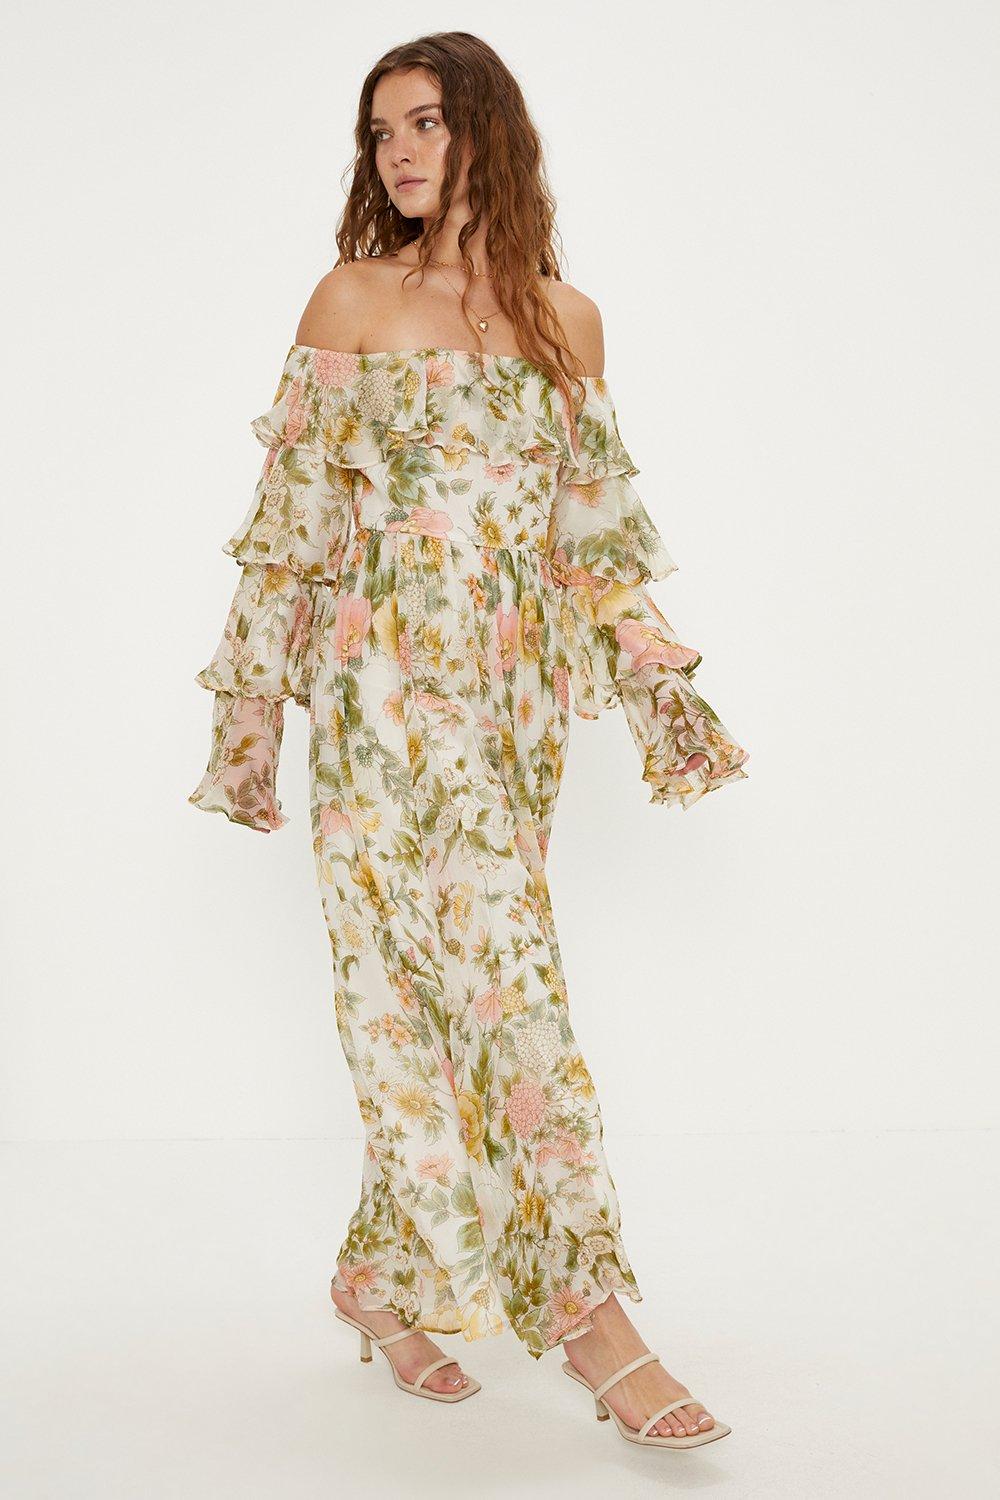 Soft Floral Chiffon Ruffle Maxi Dress